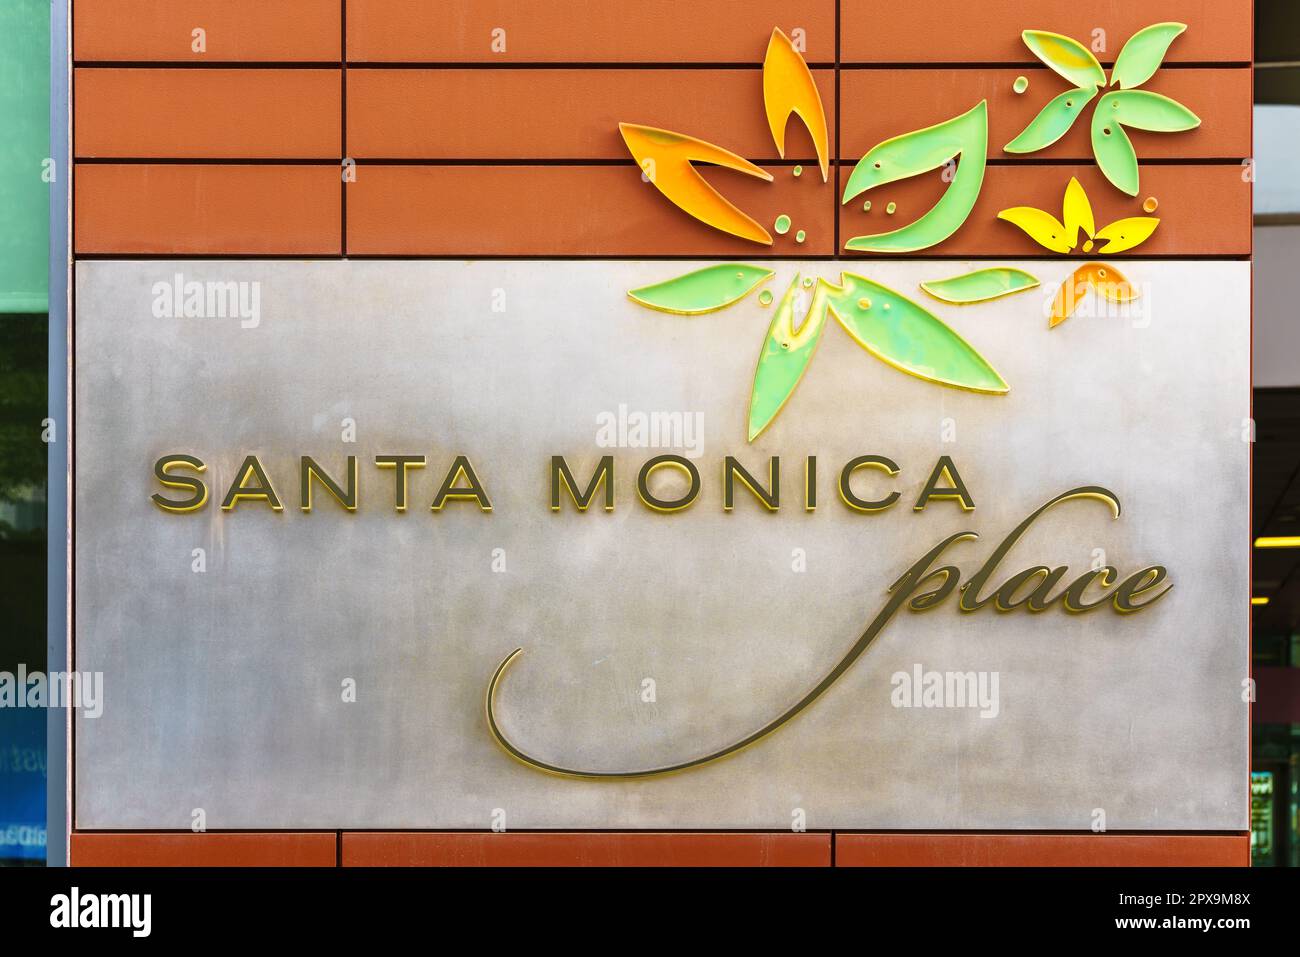 Santa Monica Place. Einkaufsviertel in Santa Monica, Los Angeles, Kalifornien, USA. Hier finden Sie eine Vielzahl von Geschäften, darunter viele Luxusgeschäfte. Stockfoto